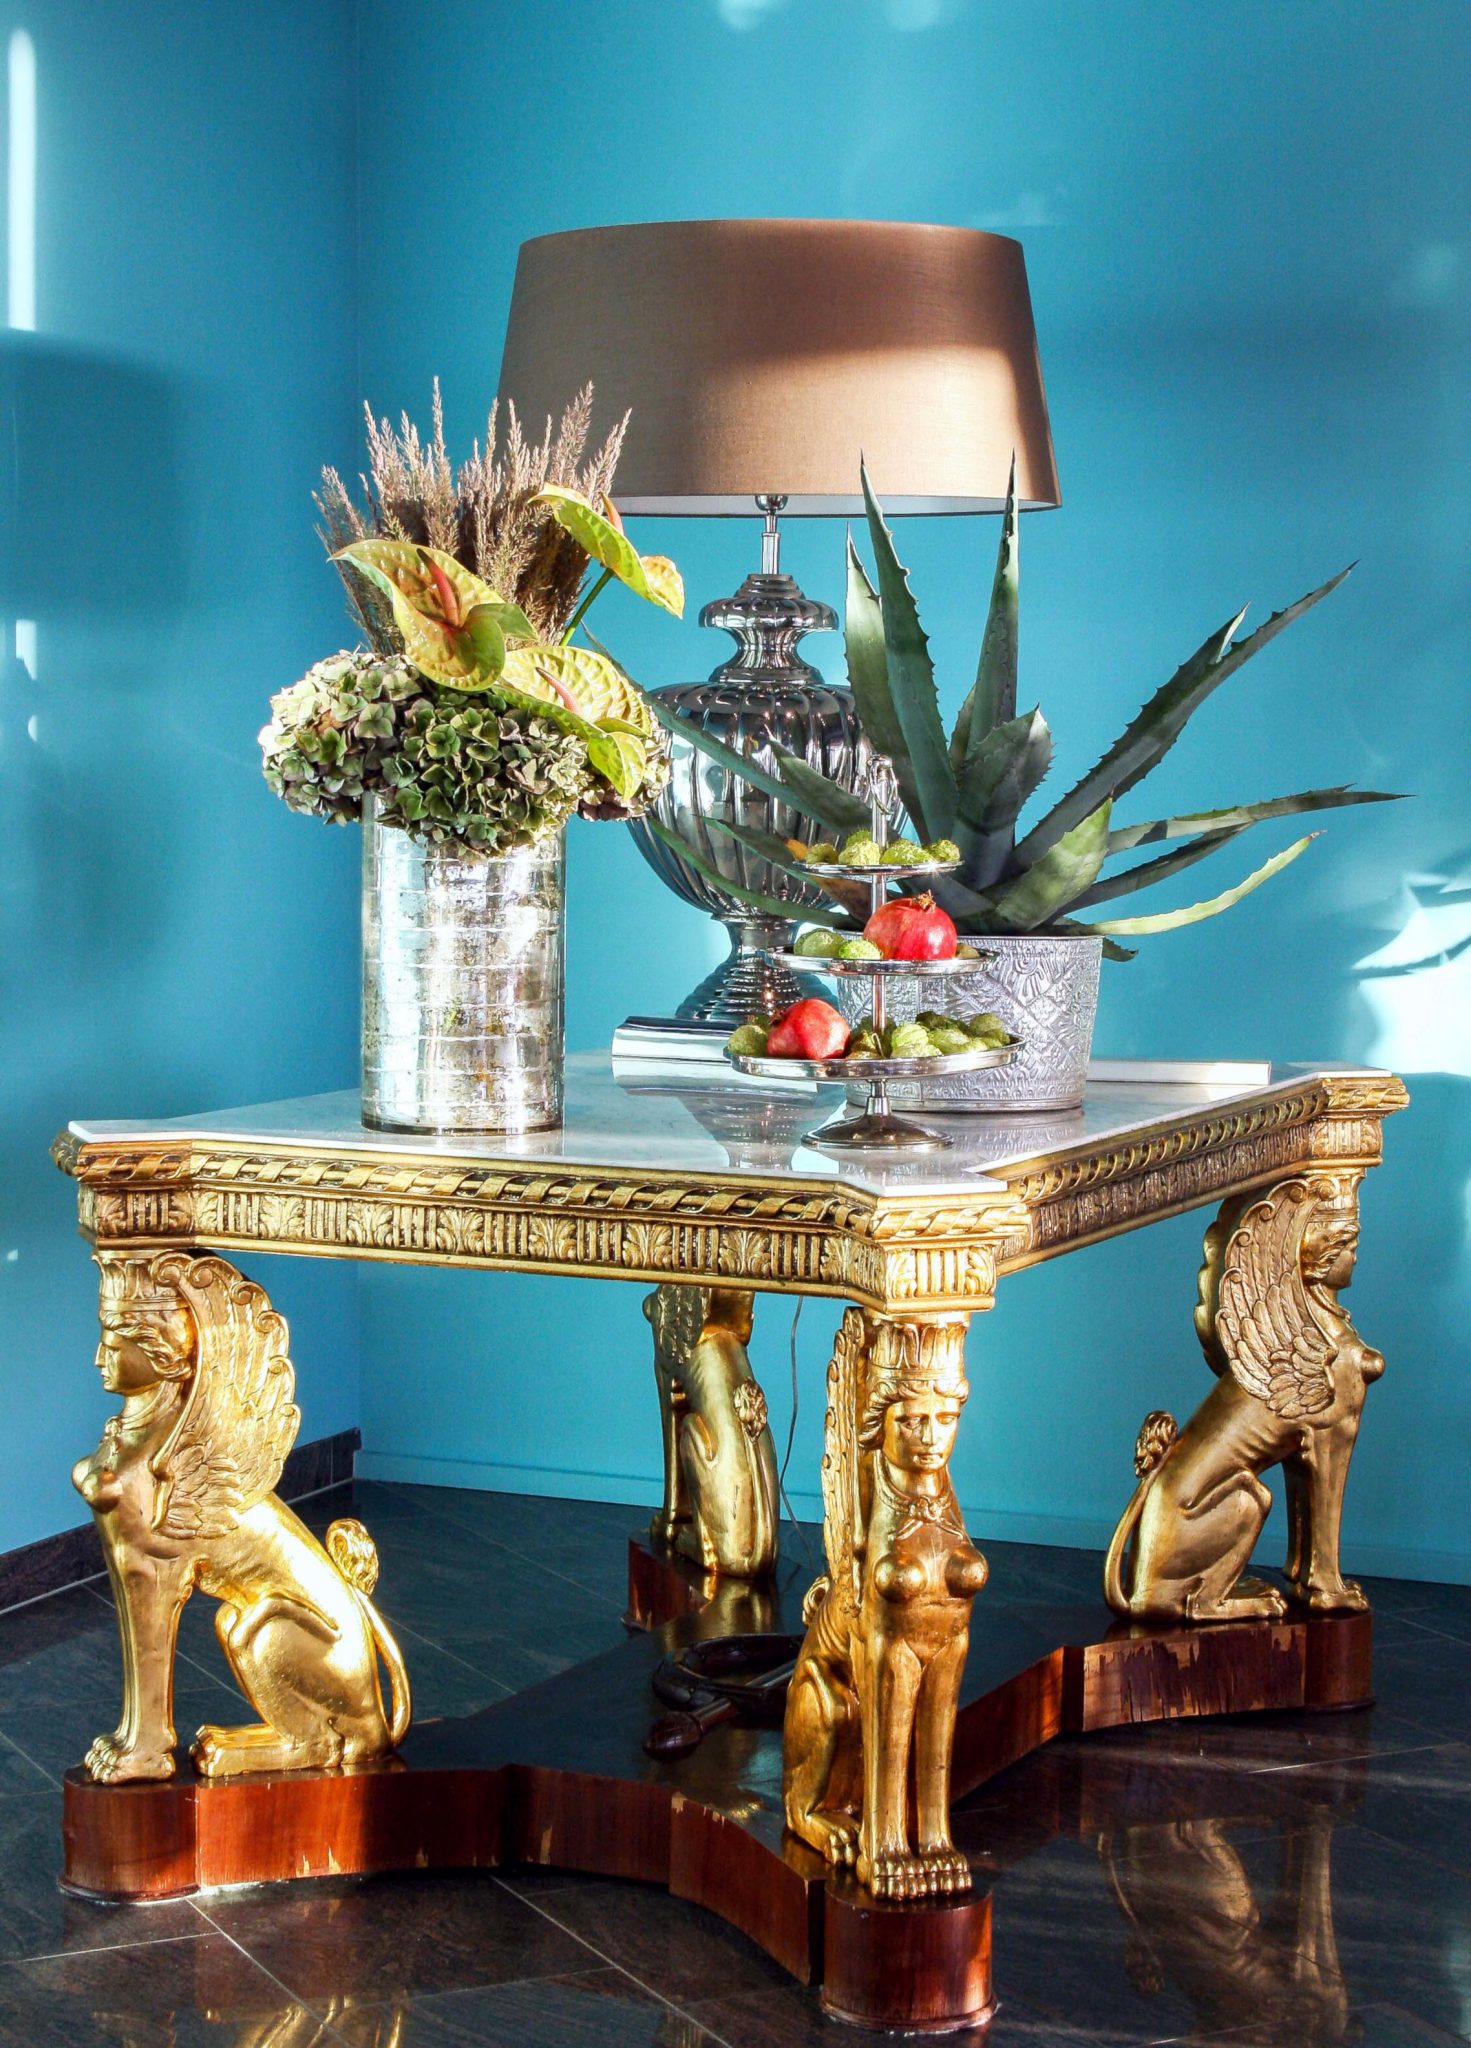 Antiker Sphinxtisch mit Goldverzierung und Marmorplatte. Lampe, Blumen und Etagere als Tischdekoration.